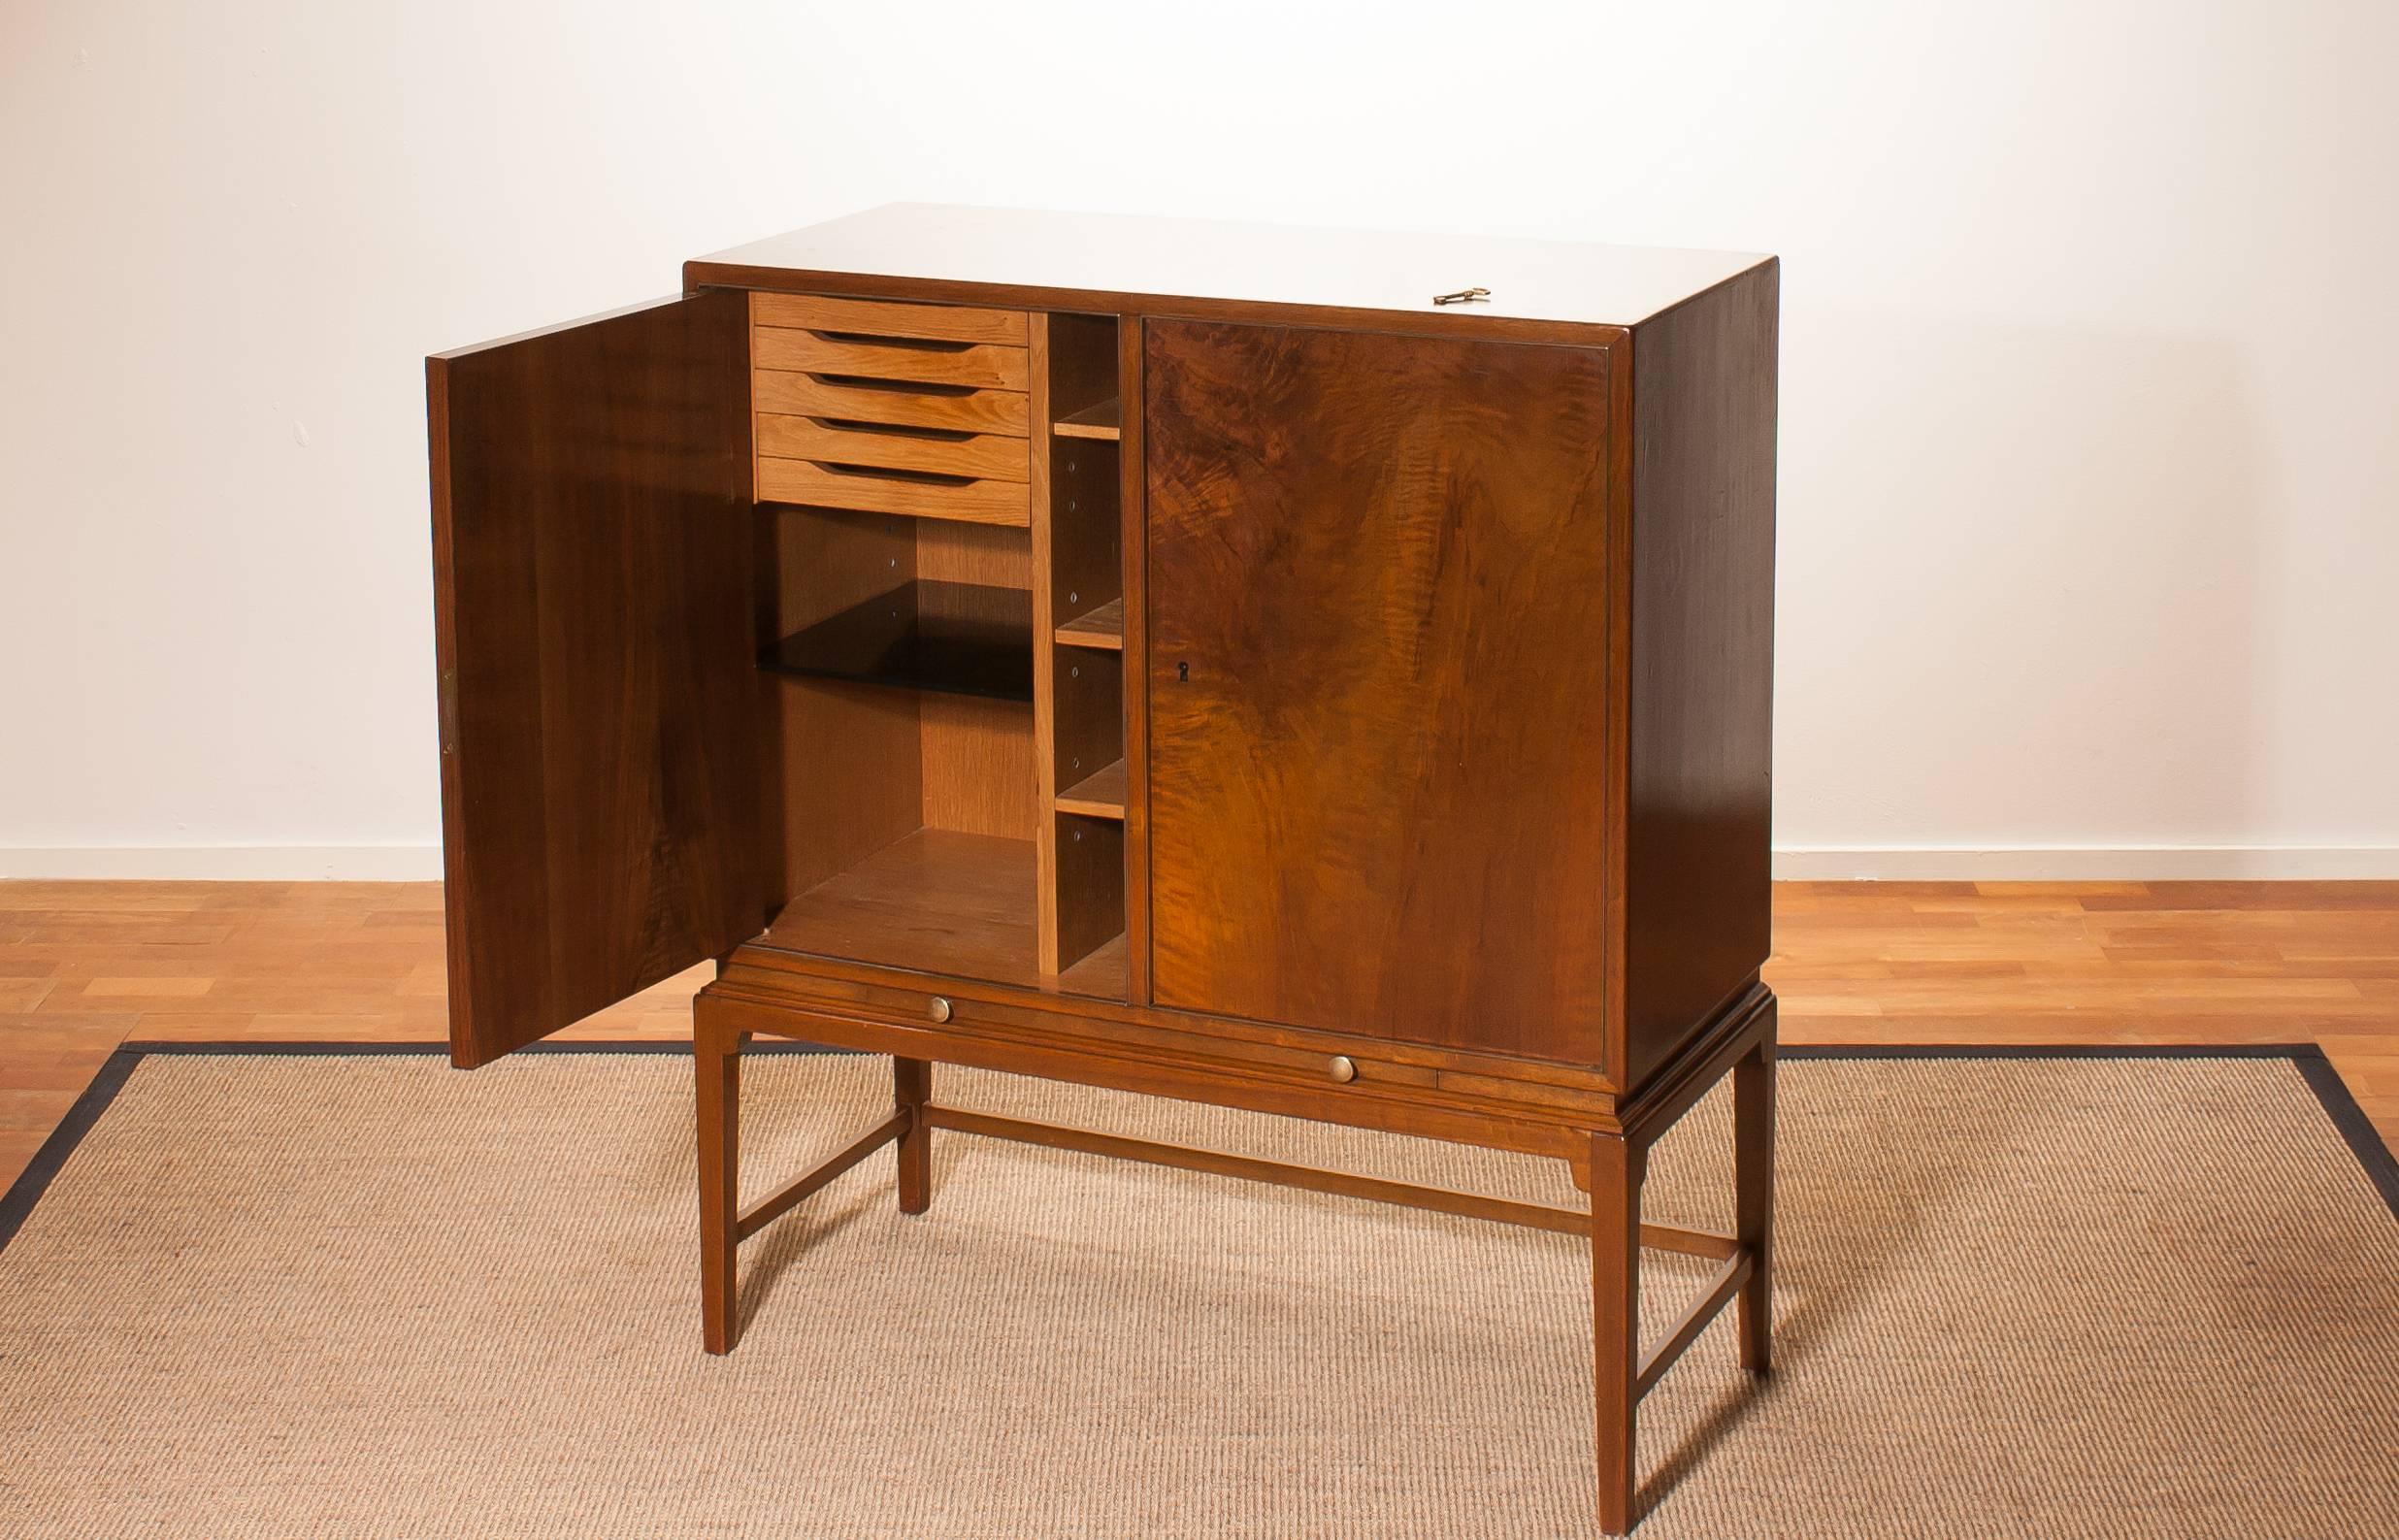 1950s, Burl Wood Cabinet by Boet Sweden 1